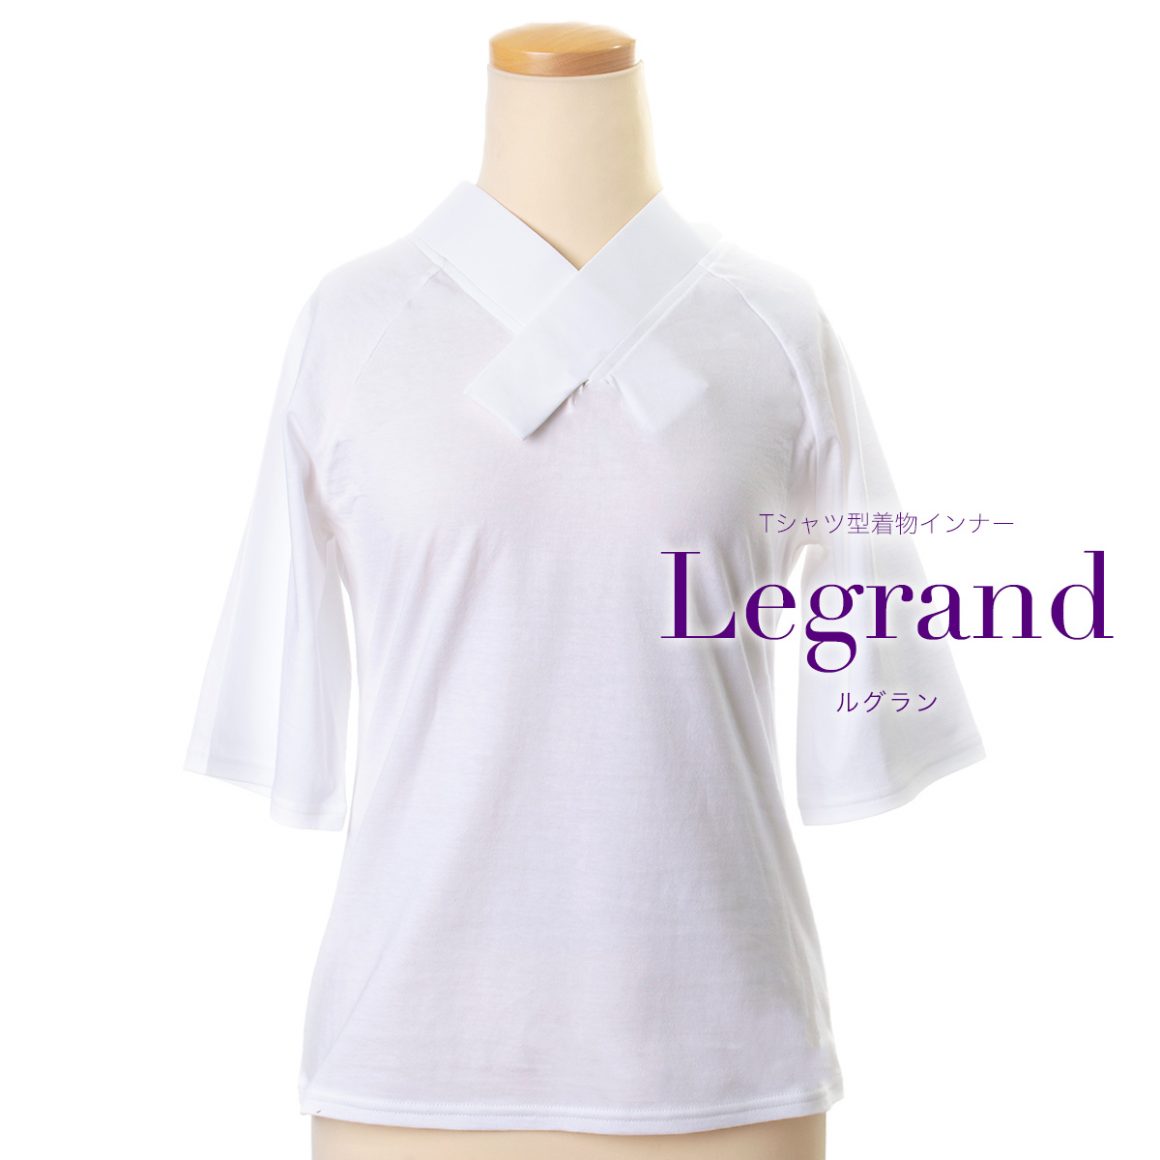 独自の視点でつくったTシャツ型の着物インナー【Legrand】 - サキガケ